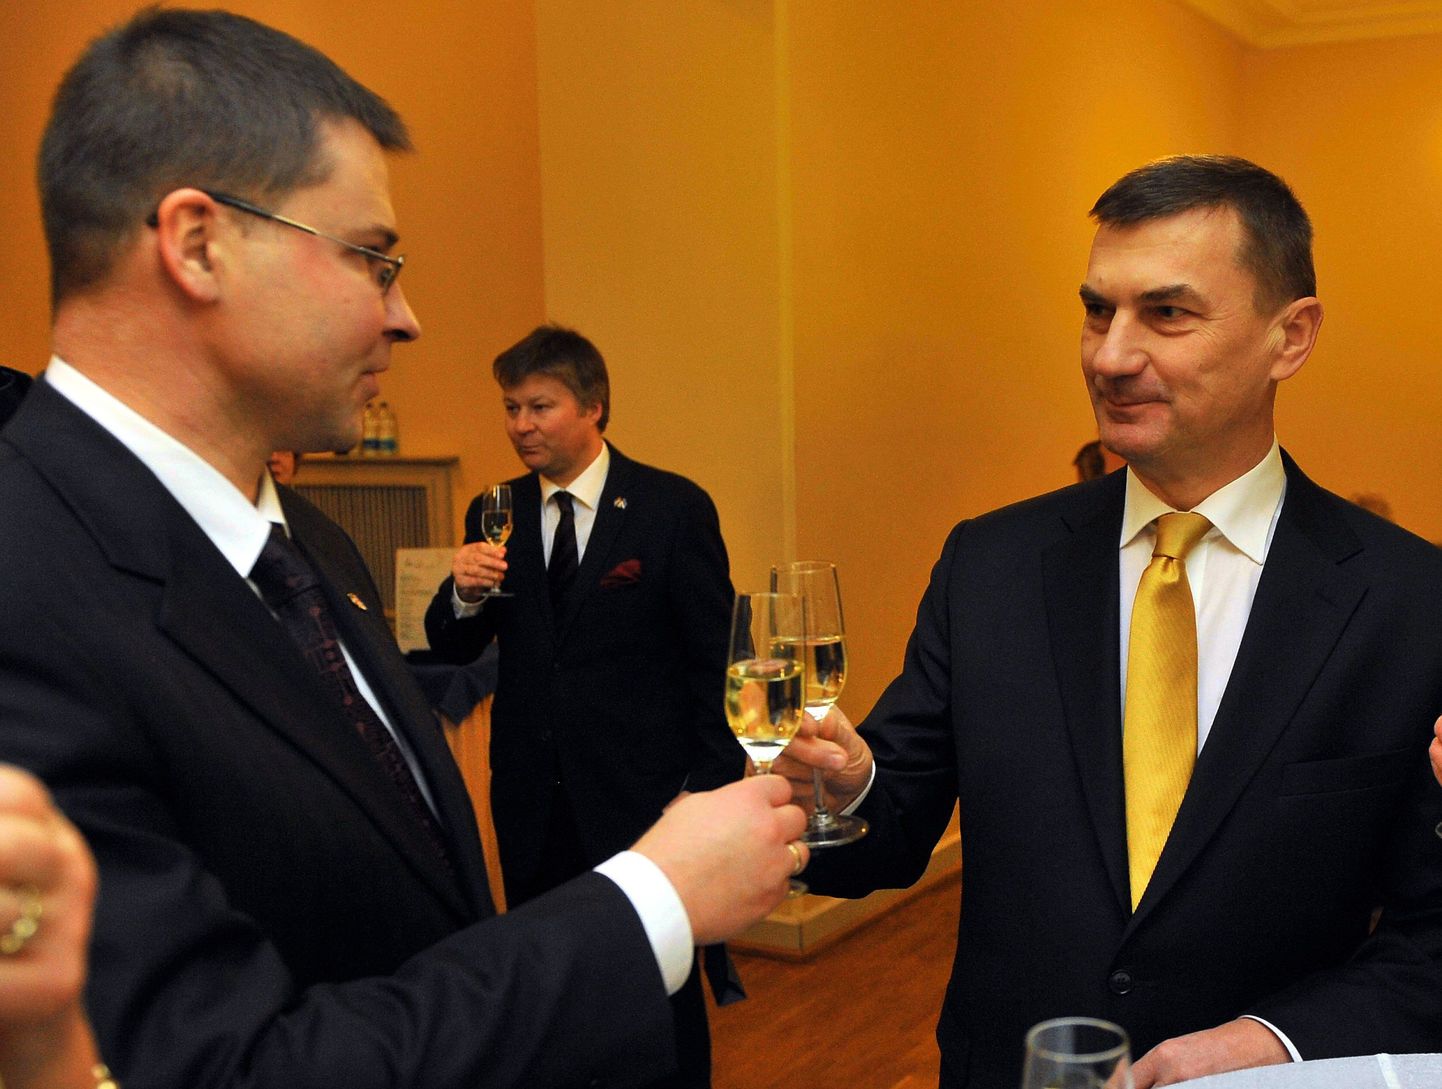 Läti peaminister Valdis Dombrovskis (vasakul)ja tema Eesti kolleeg Andrus Ansip 1. jaanuaril Tallinnas.